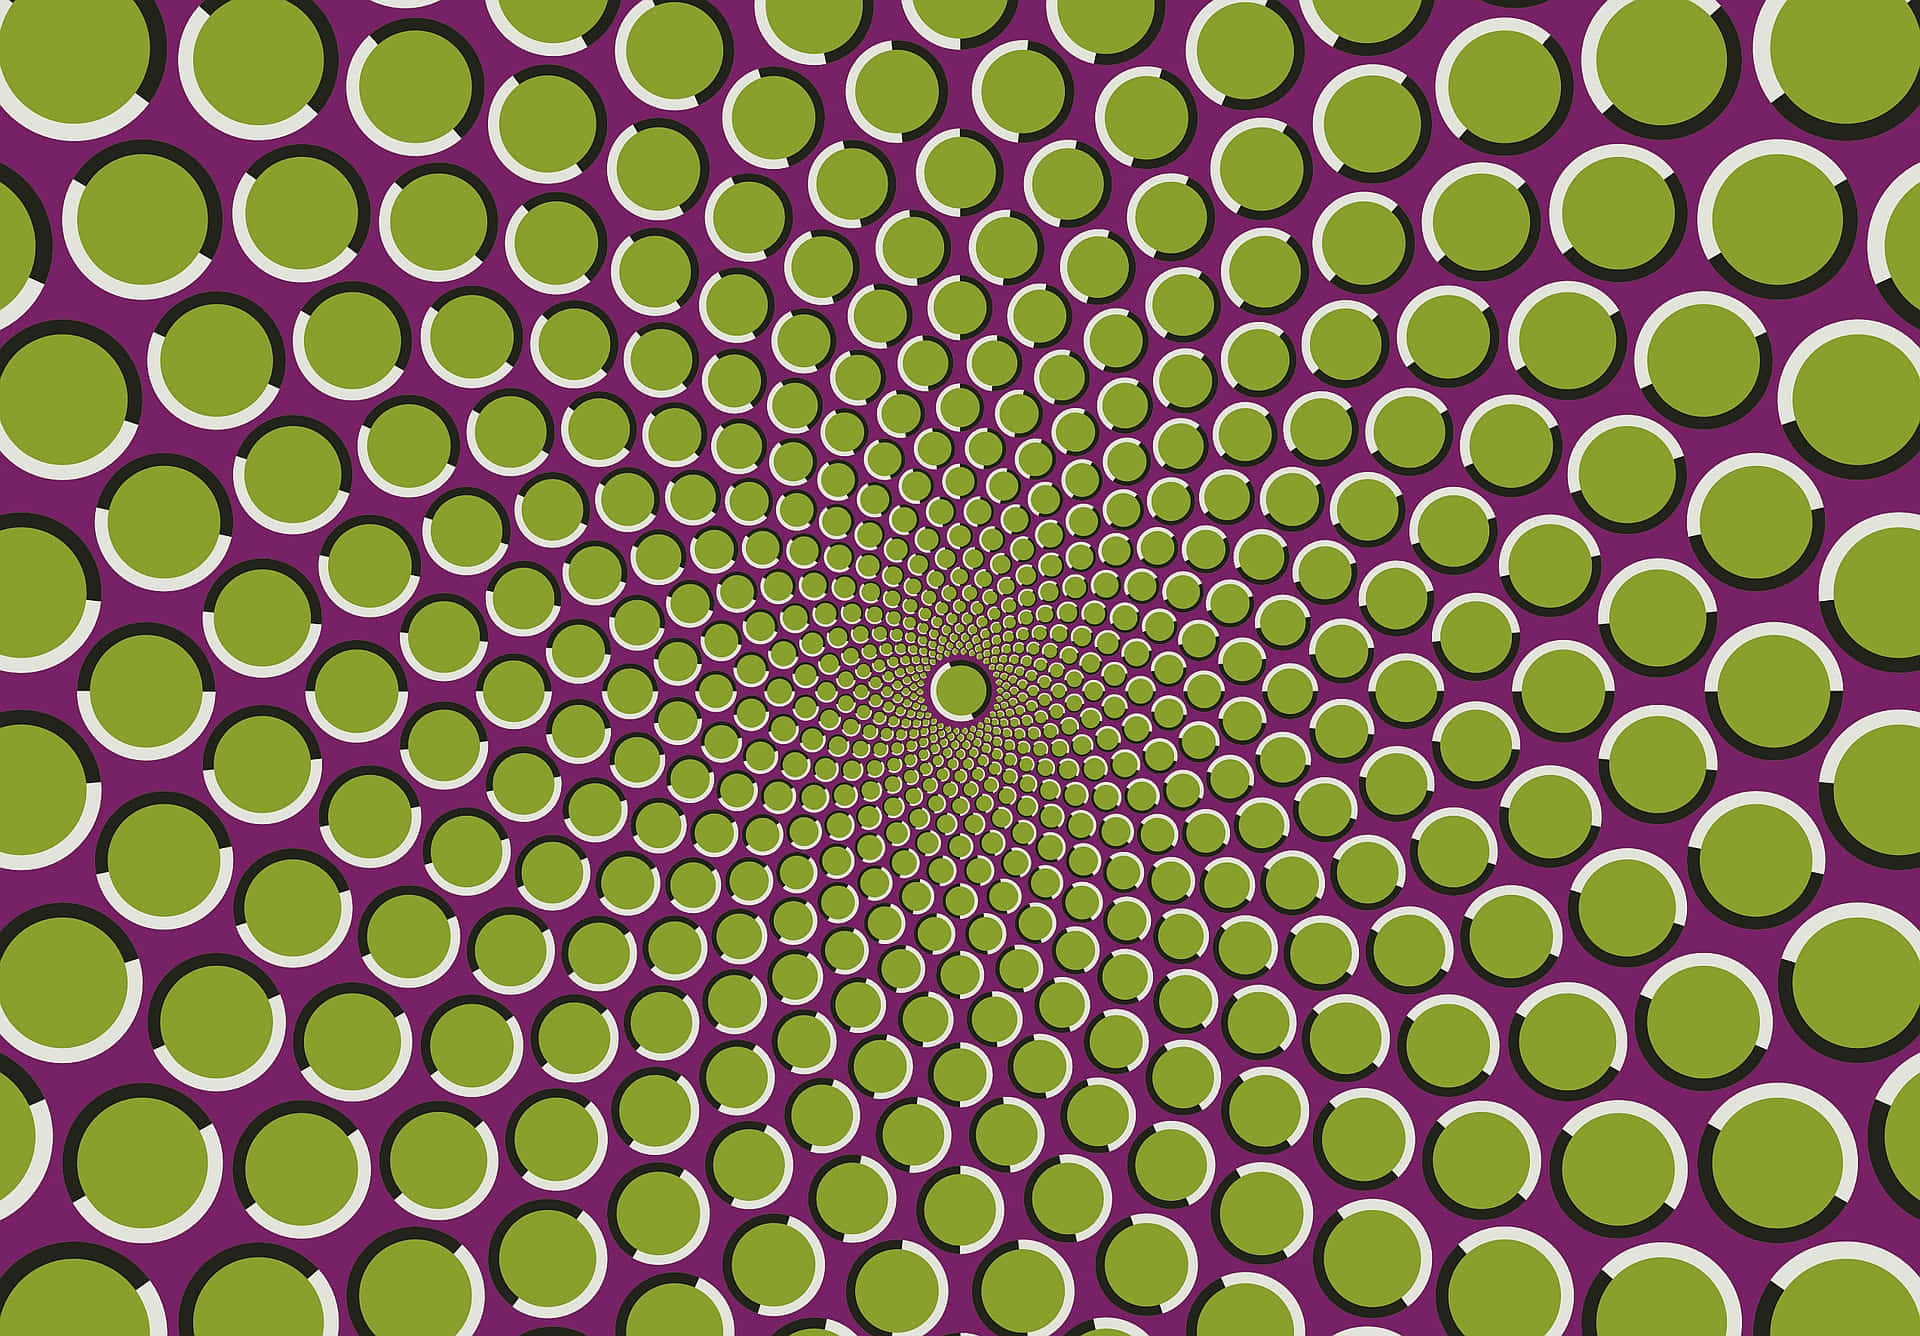 Immaginedi Illusioni Con Cerchi Verdi Di Diversi Colori